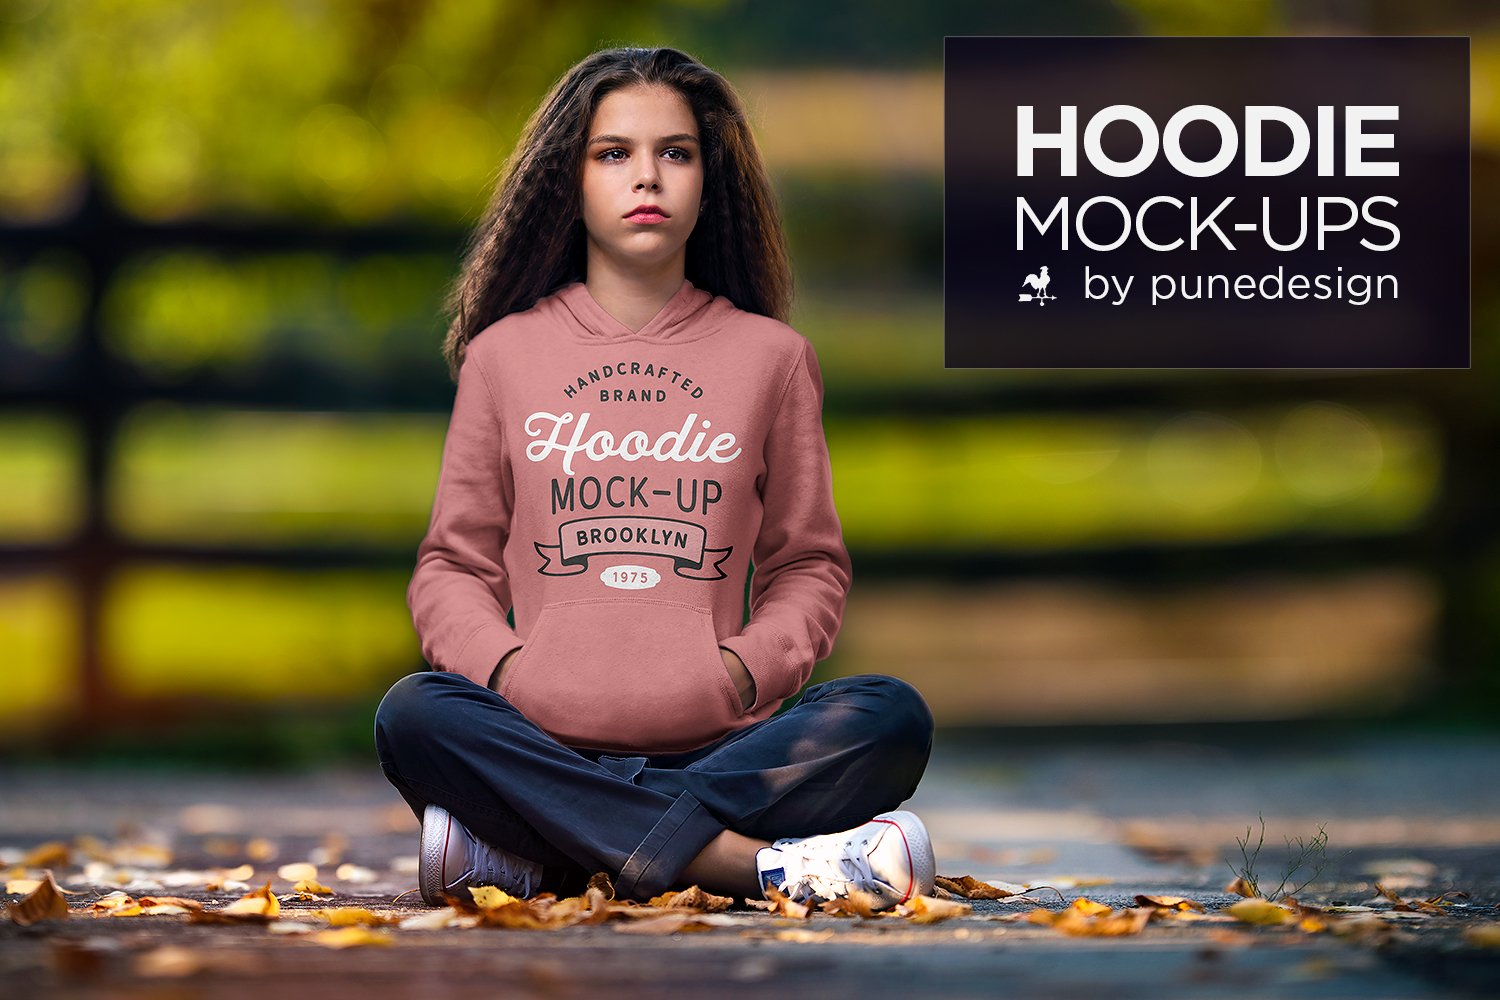 Hoodie Mock-Up Vol.4 cover image.